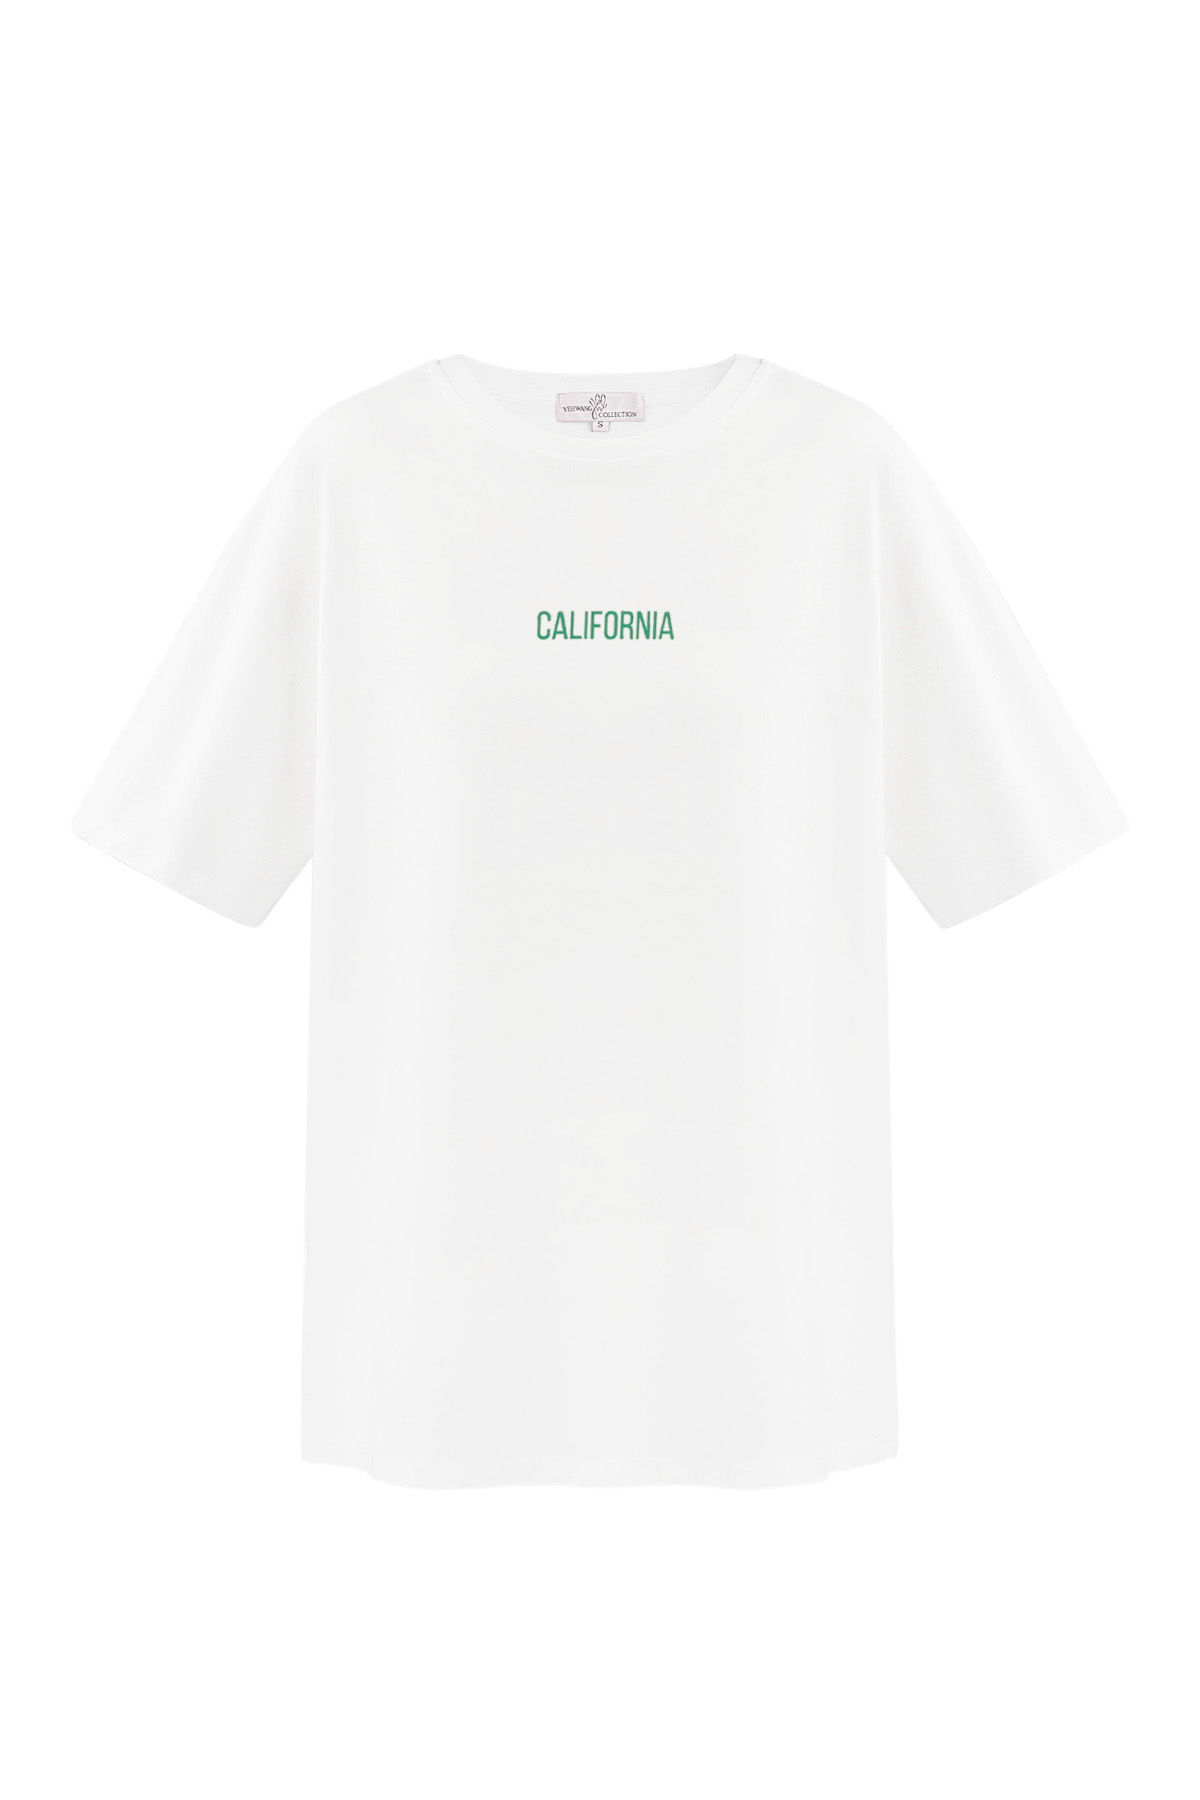 Camiseta California - blanco h5 